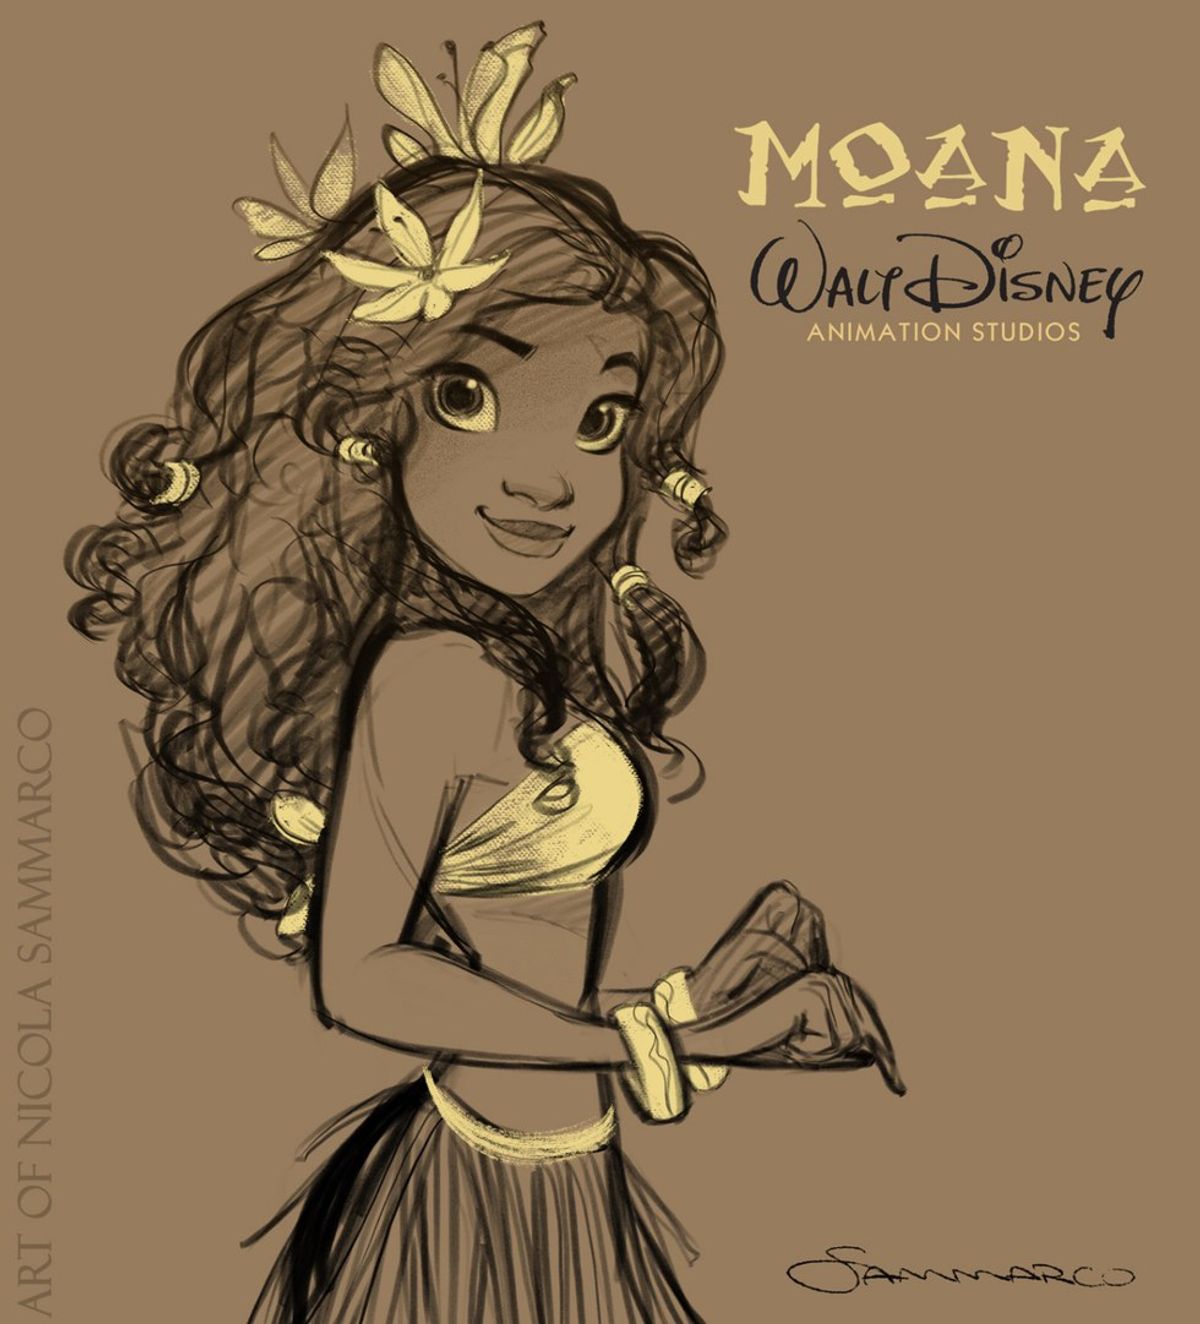 Why I Loved "Moana"